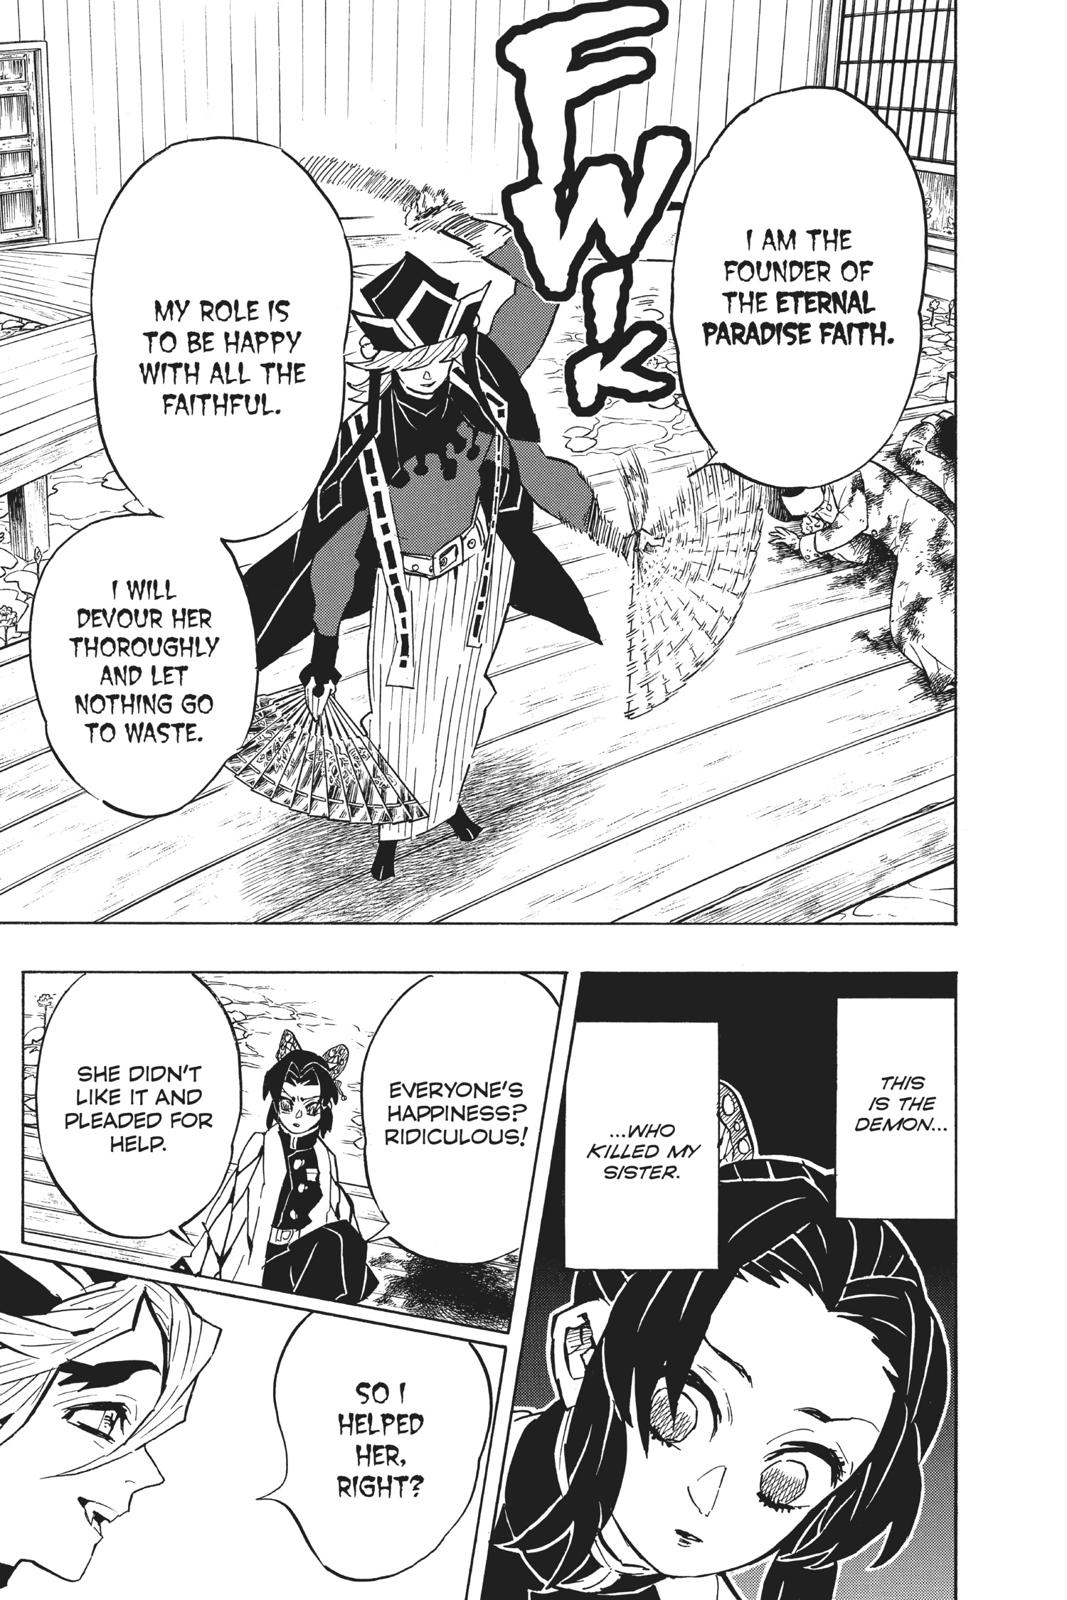 Demon Slayer Manga Manga Chapter - 141 - image 7